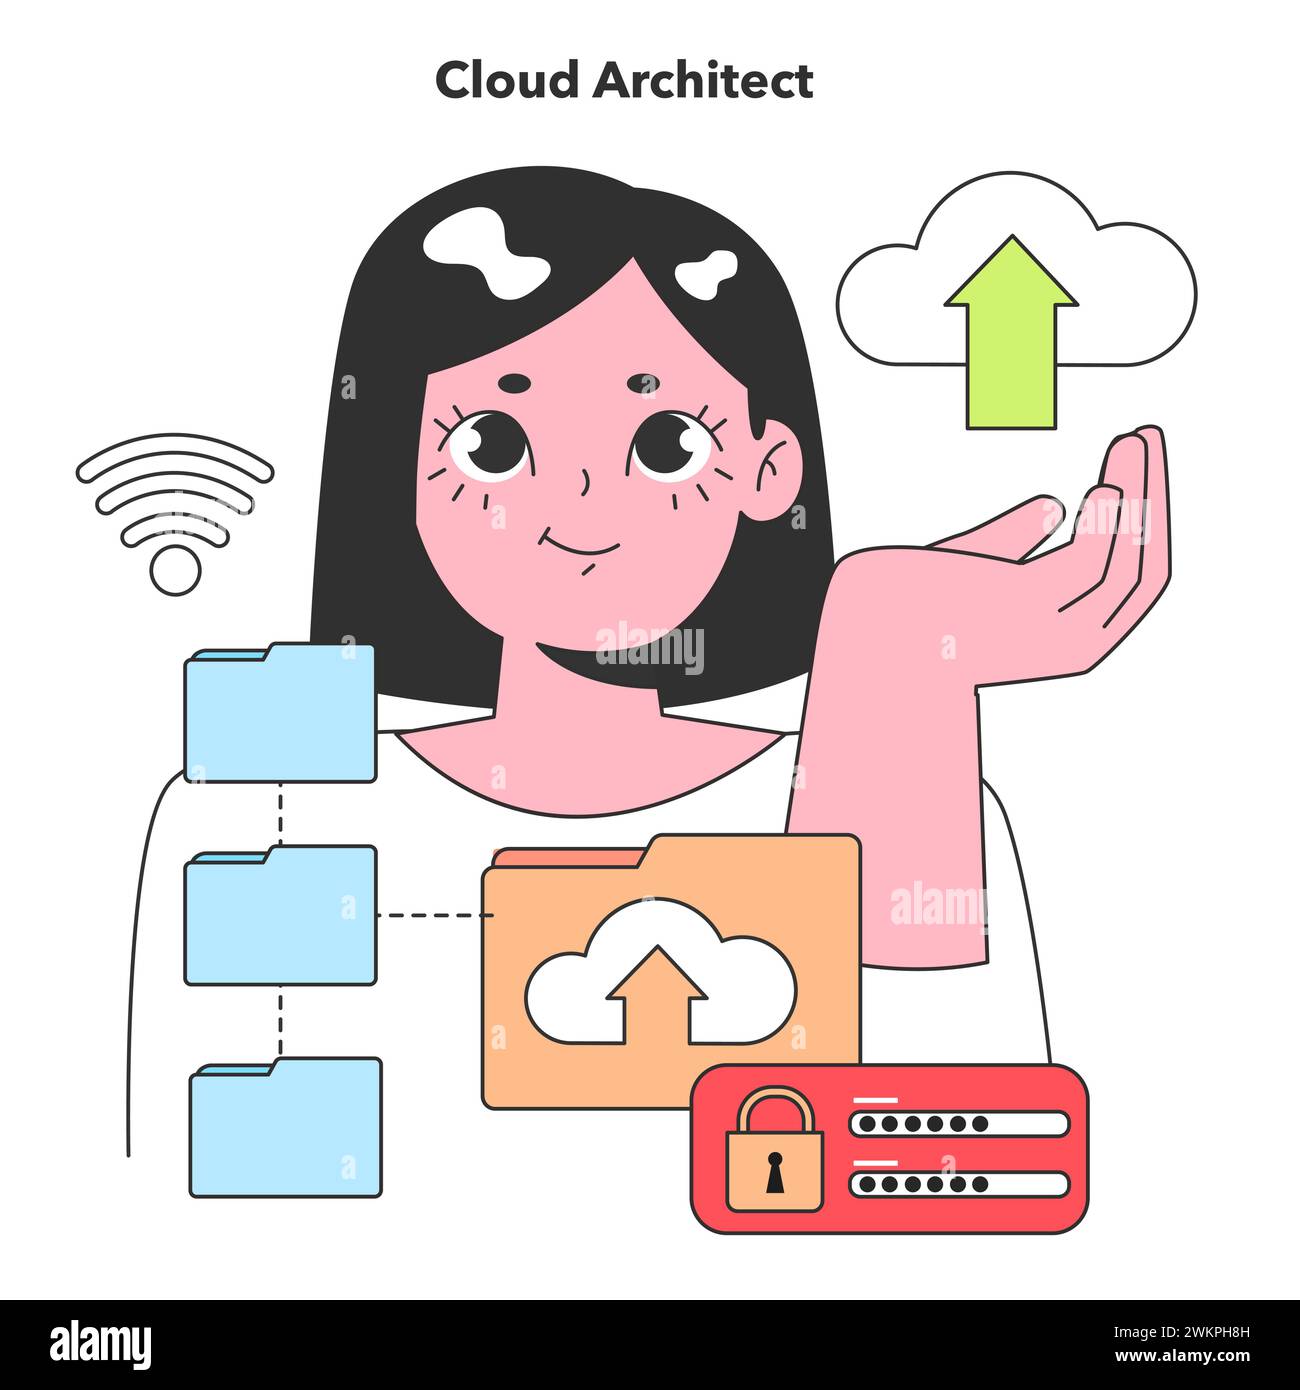 Ein Cloud Architect erweitert Daten in die Stratosphäre und erstellt sichere und skalierbare Cloud-Lösungen, die moderne Unternehmen unterstützen. Stock Vektor